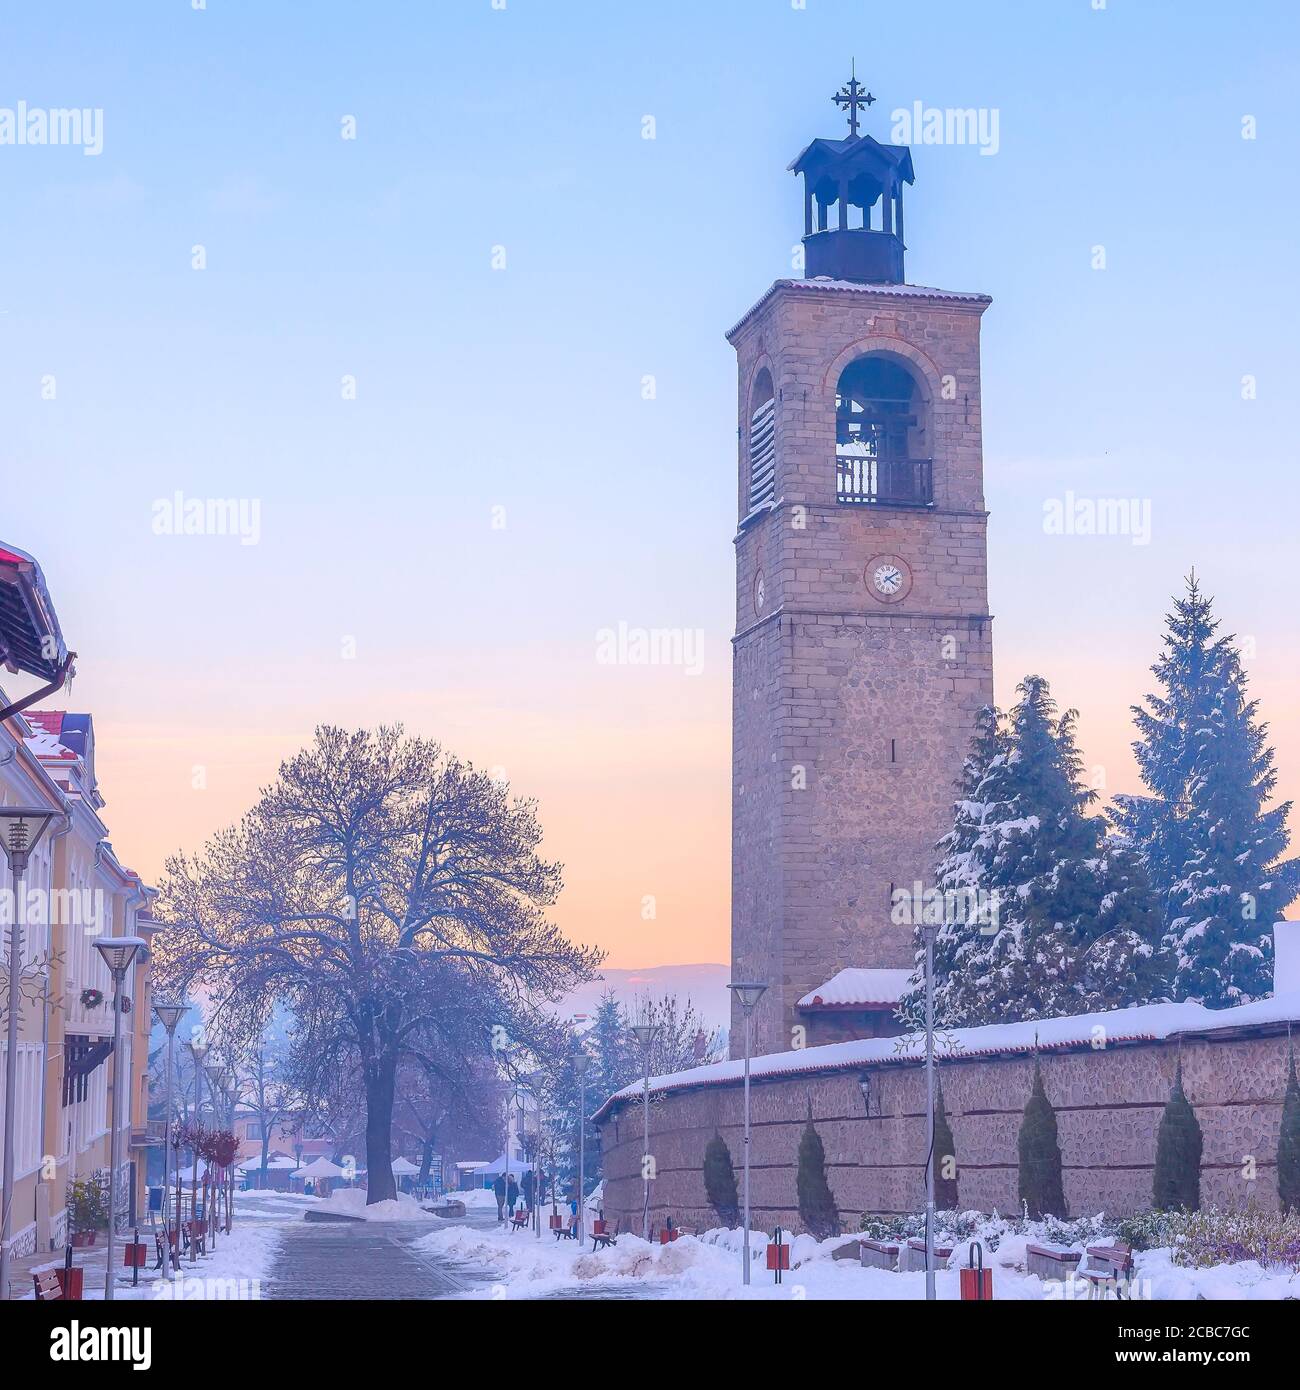 Bansko, centre-ville de Bulgarie, rue Pirin, clocher de l'église Sveta Troitsa, vue en soirée Banque D'Images